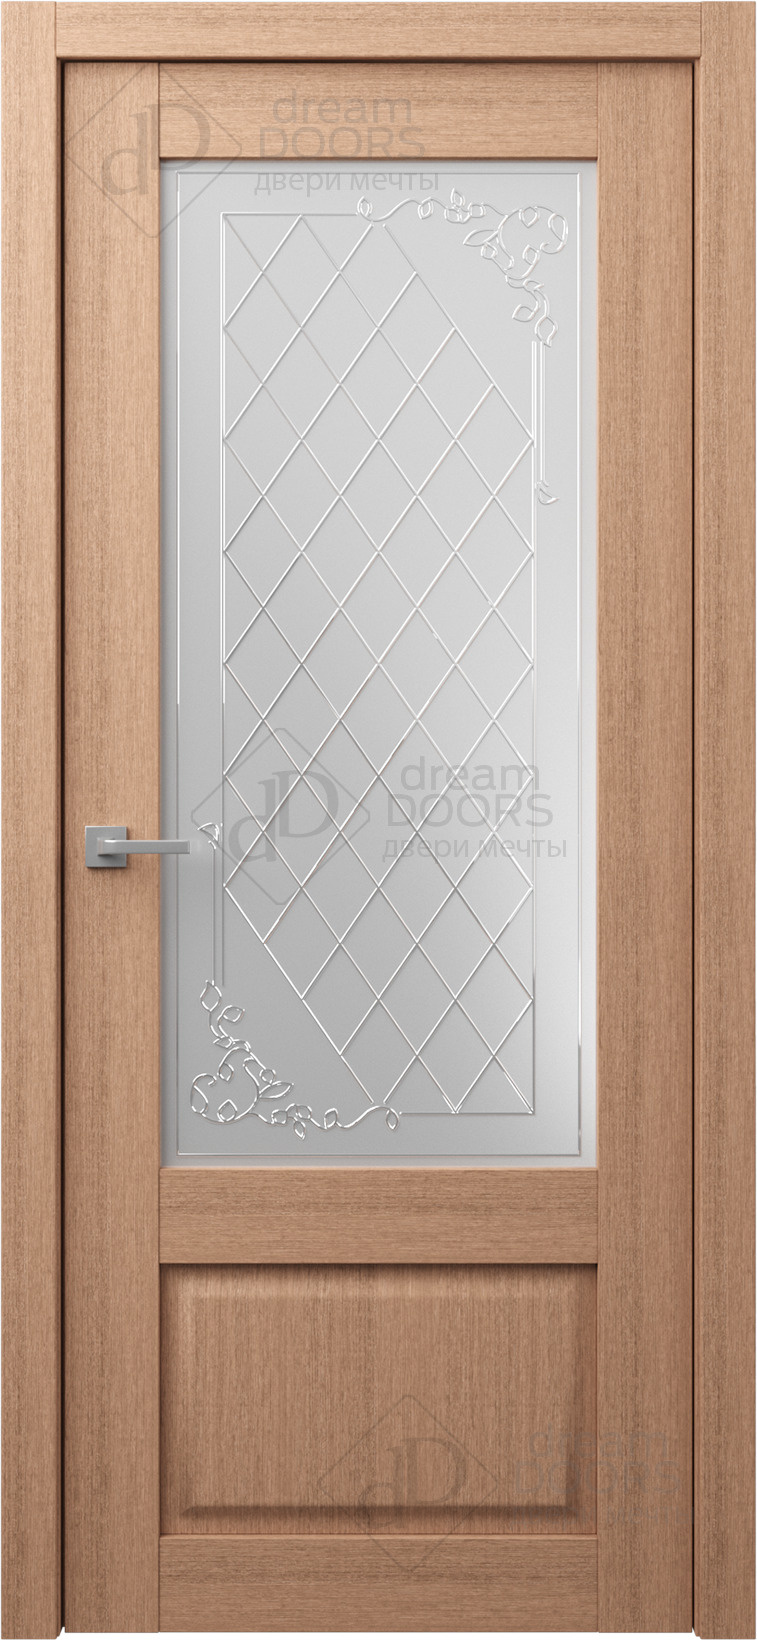 Dream Doors Межкомнатная дверь P19, арт. 18229 - фото №1